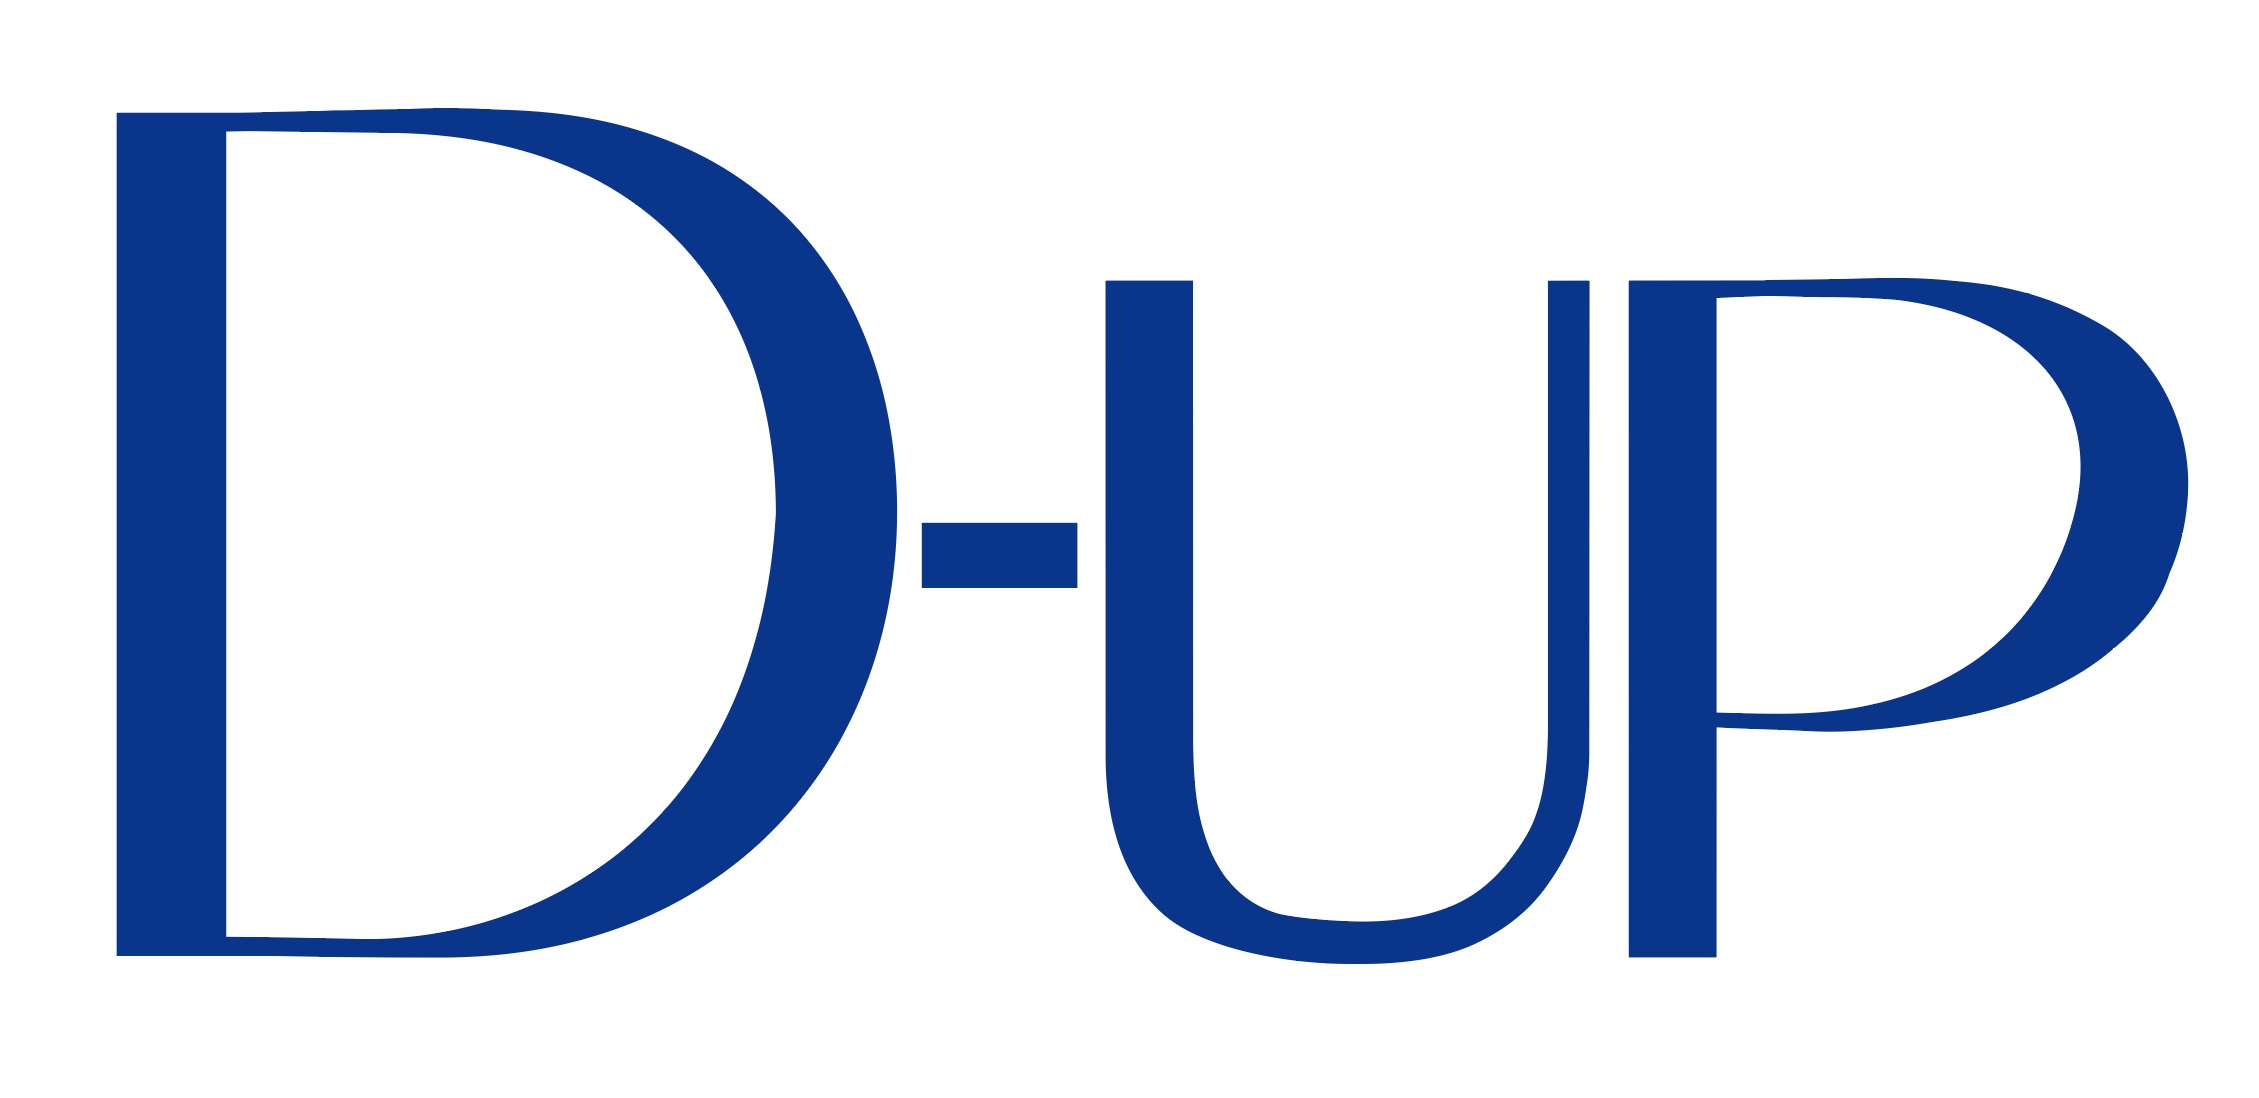 2018d up logo blue